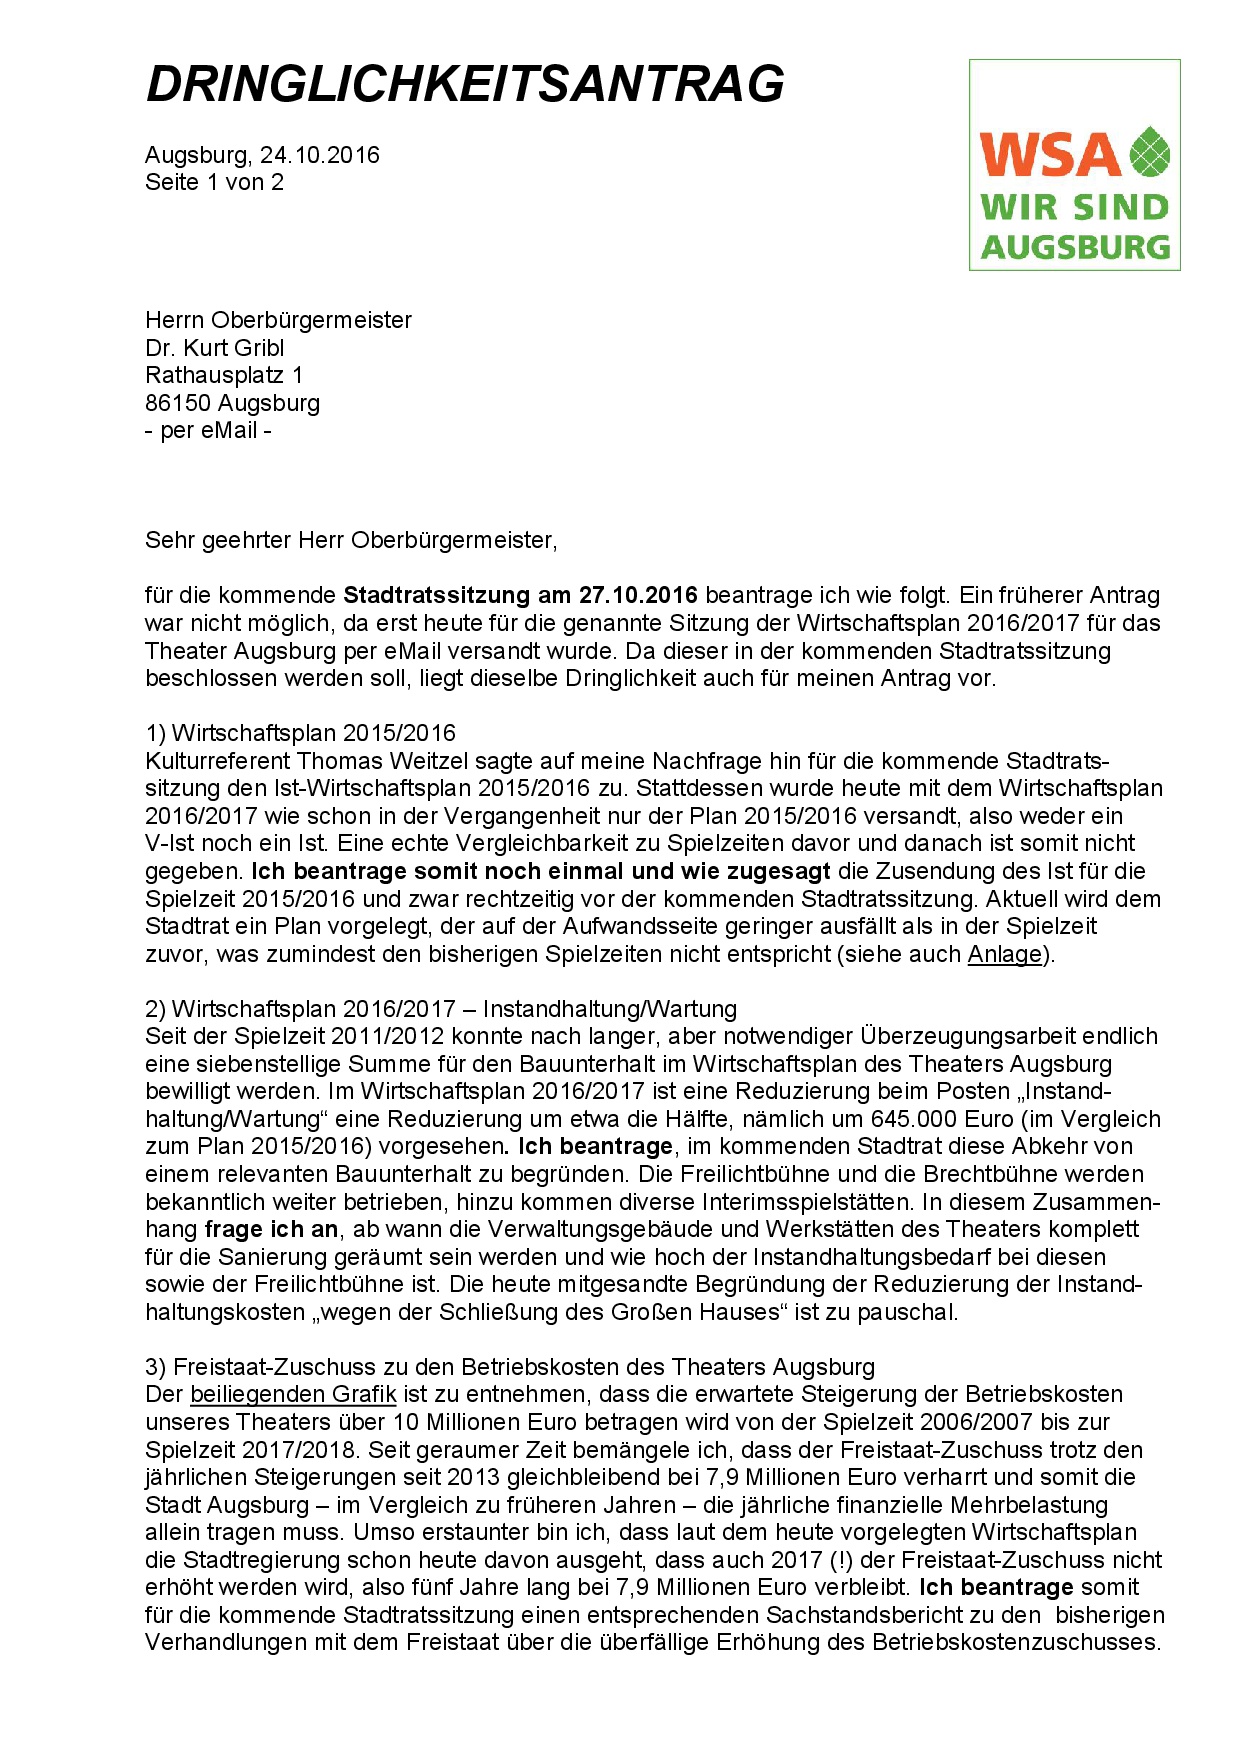 WSA-Antrag vom 24.10.2016 zum Wirtschaftsplan des Theaters Augsburg, Seite 1